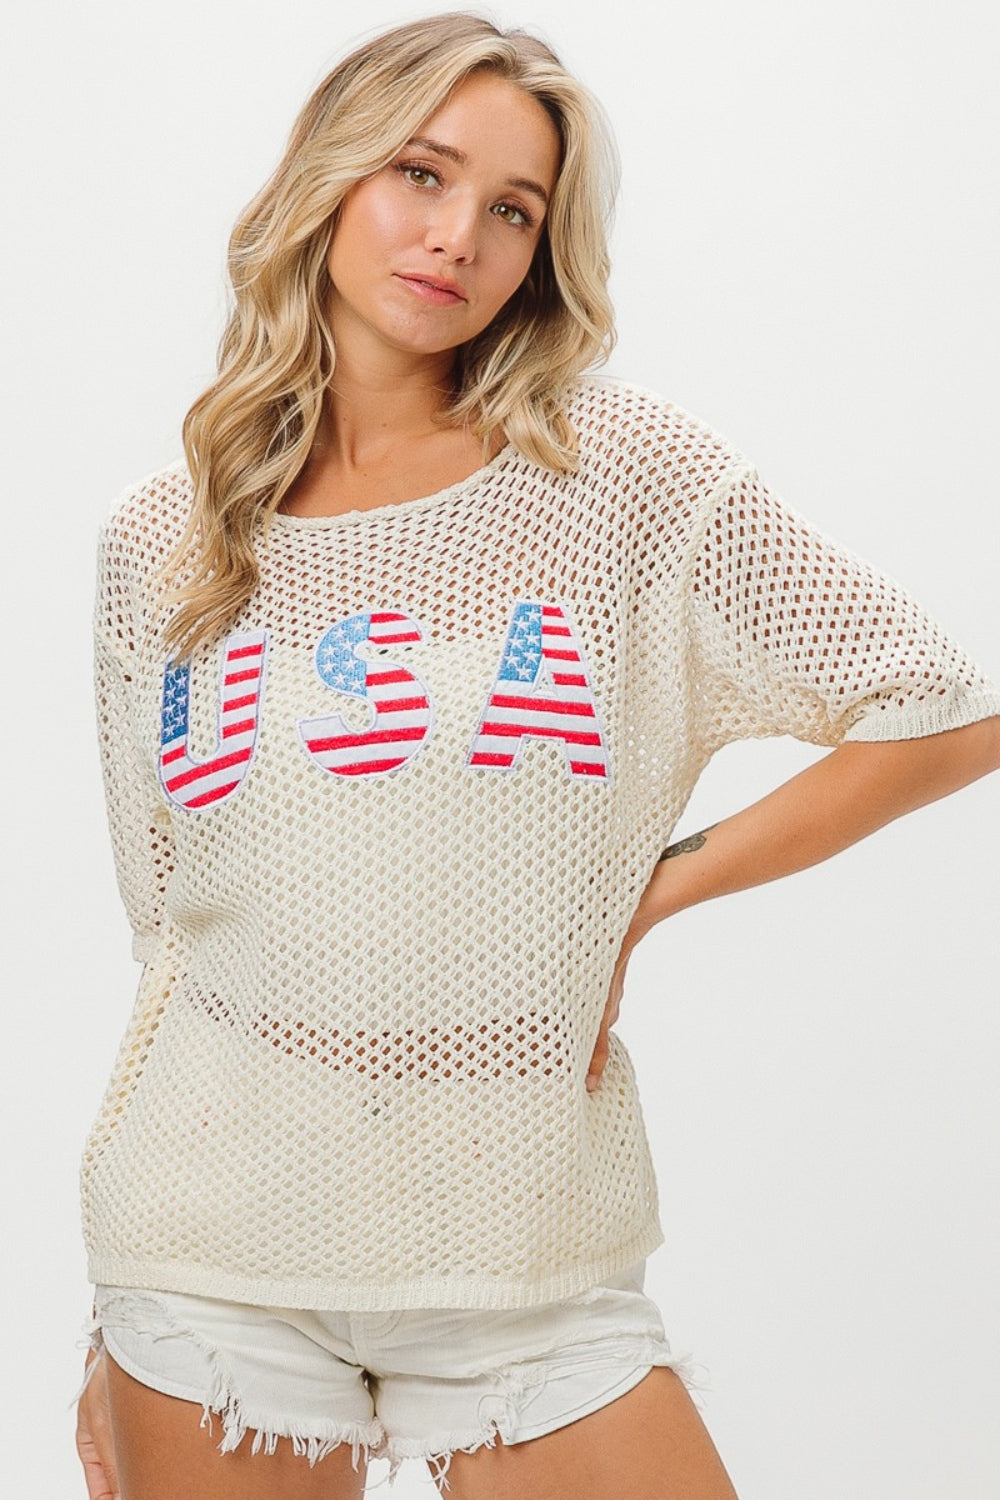 Hazel Blues® |  BiBi US Flag Theme Knit Cover Up